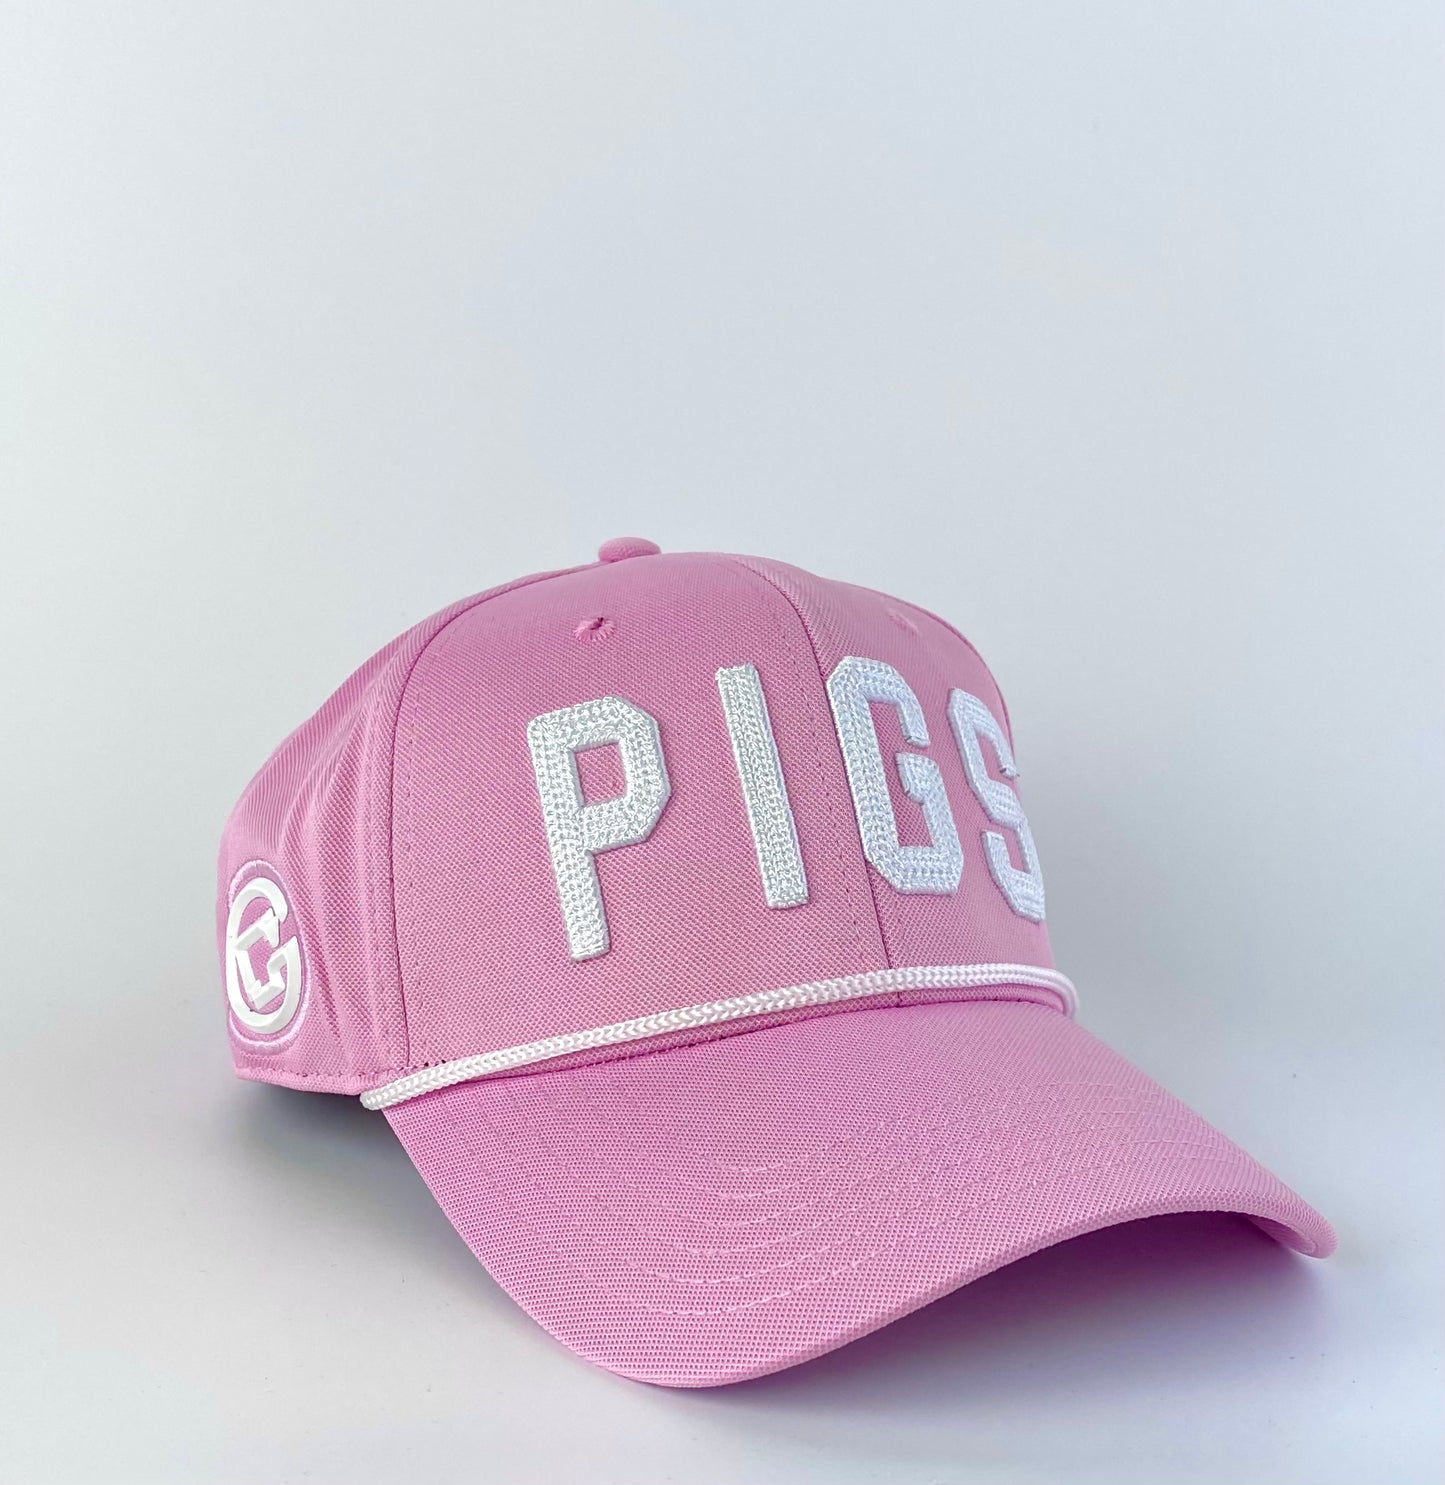 "OG" PIGS - Pink - Snapback - Curved Bill